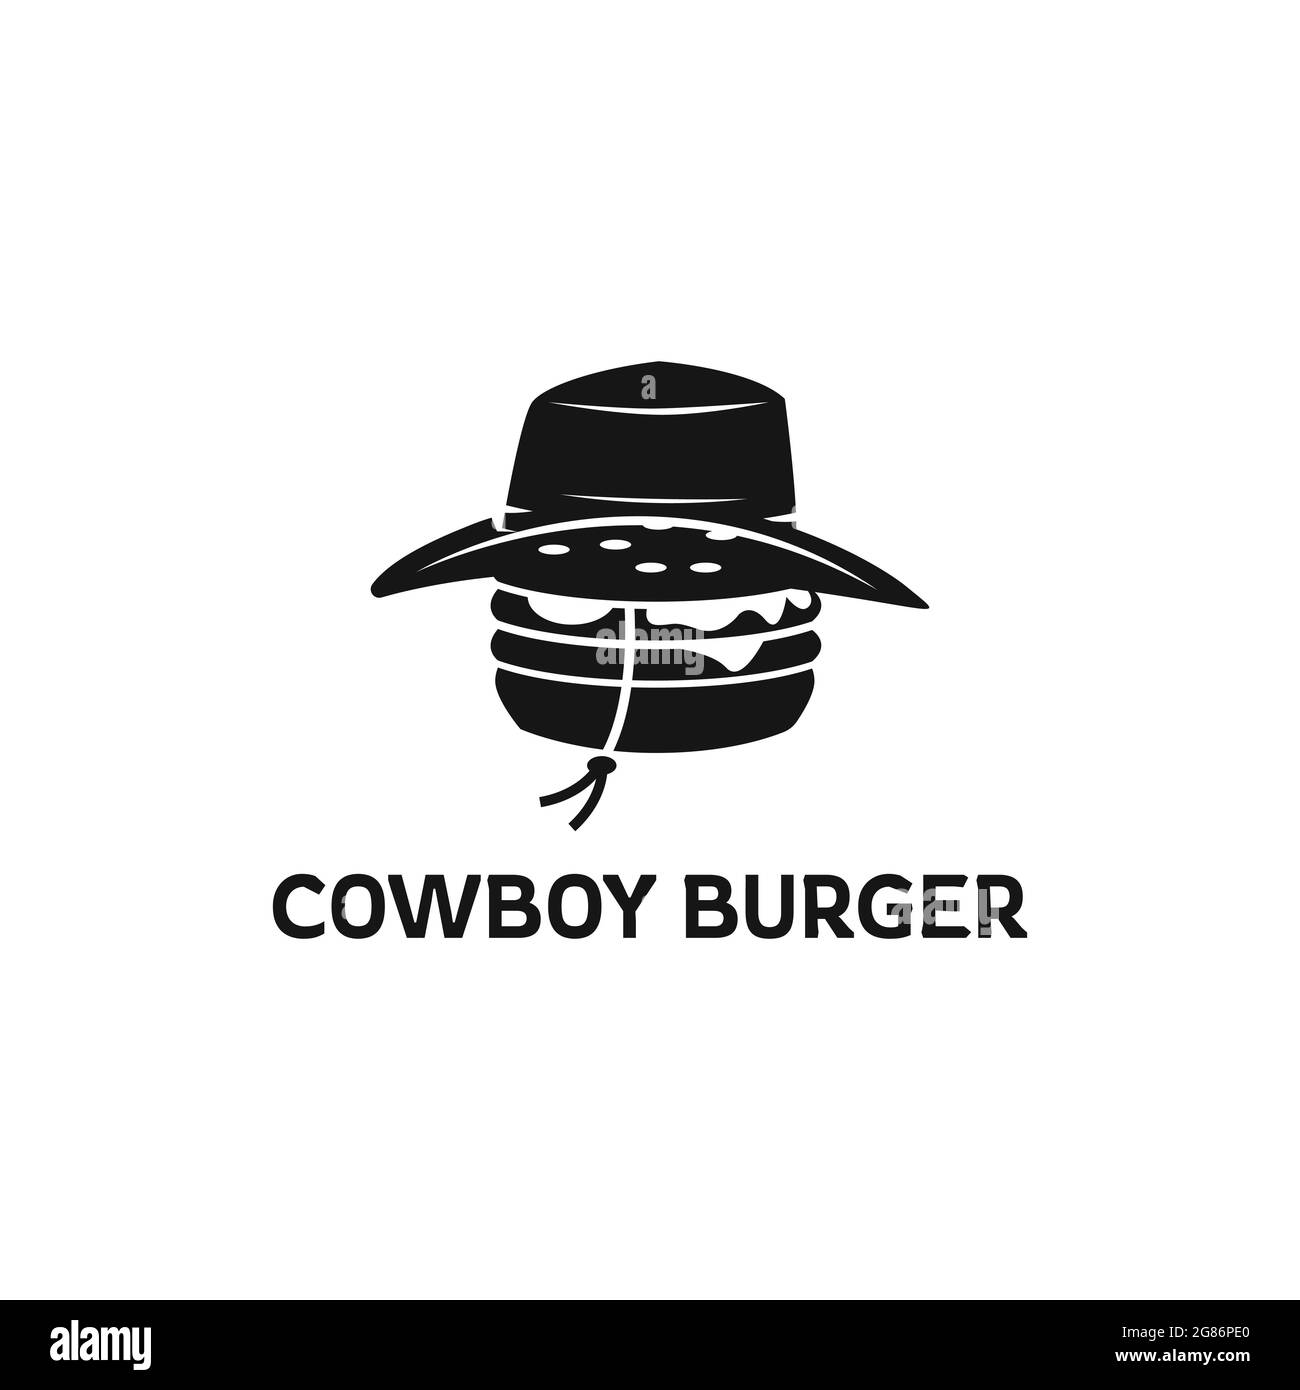 Modèle de logo Burger Vector avec chapeau de cowboy, illustration d'icône de fast food moderne, idéal pour la conception de restaurants de fast food. Illustration de Vecteur